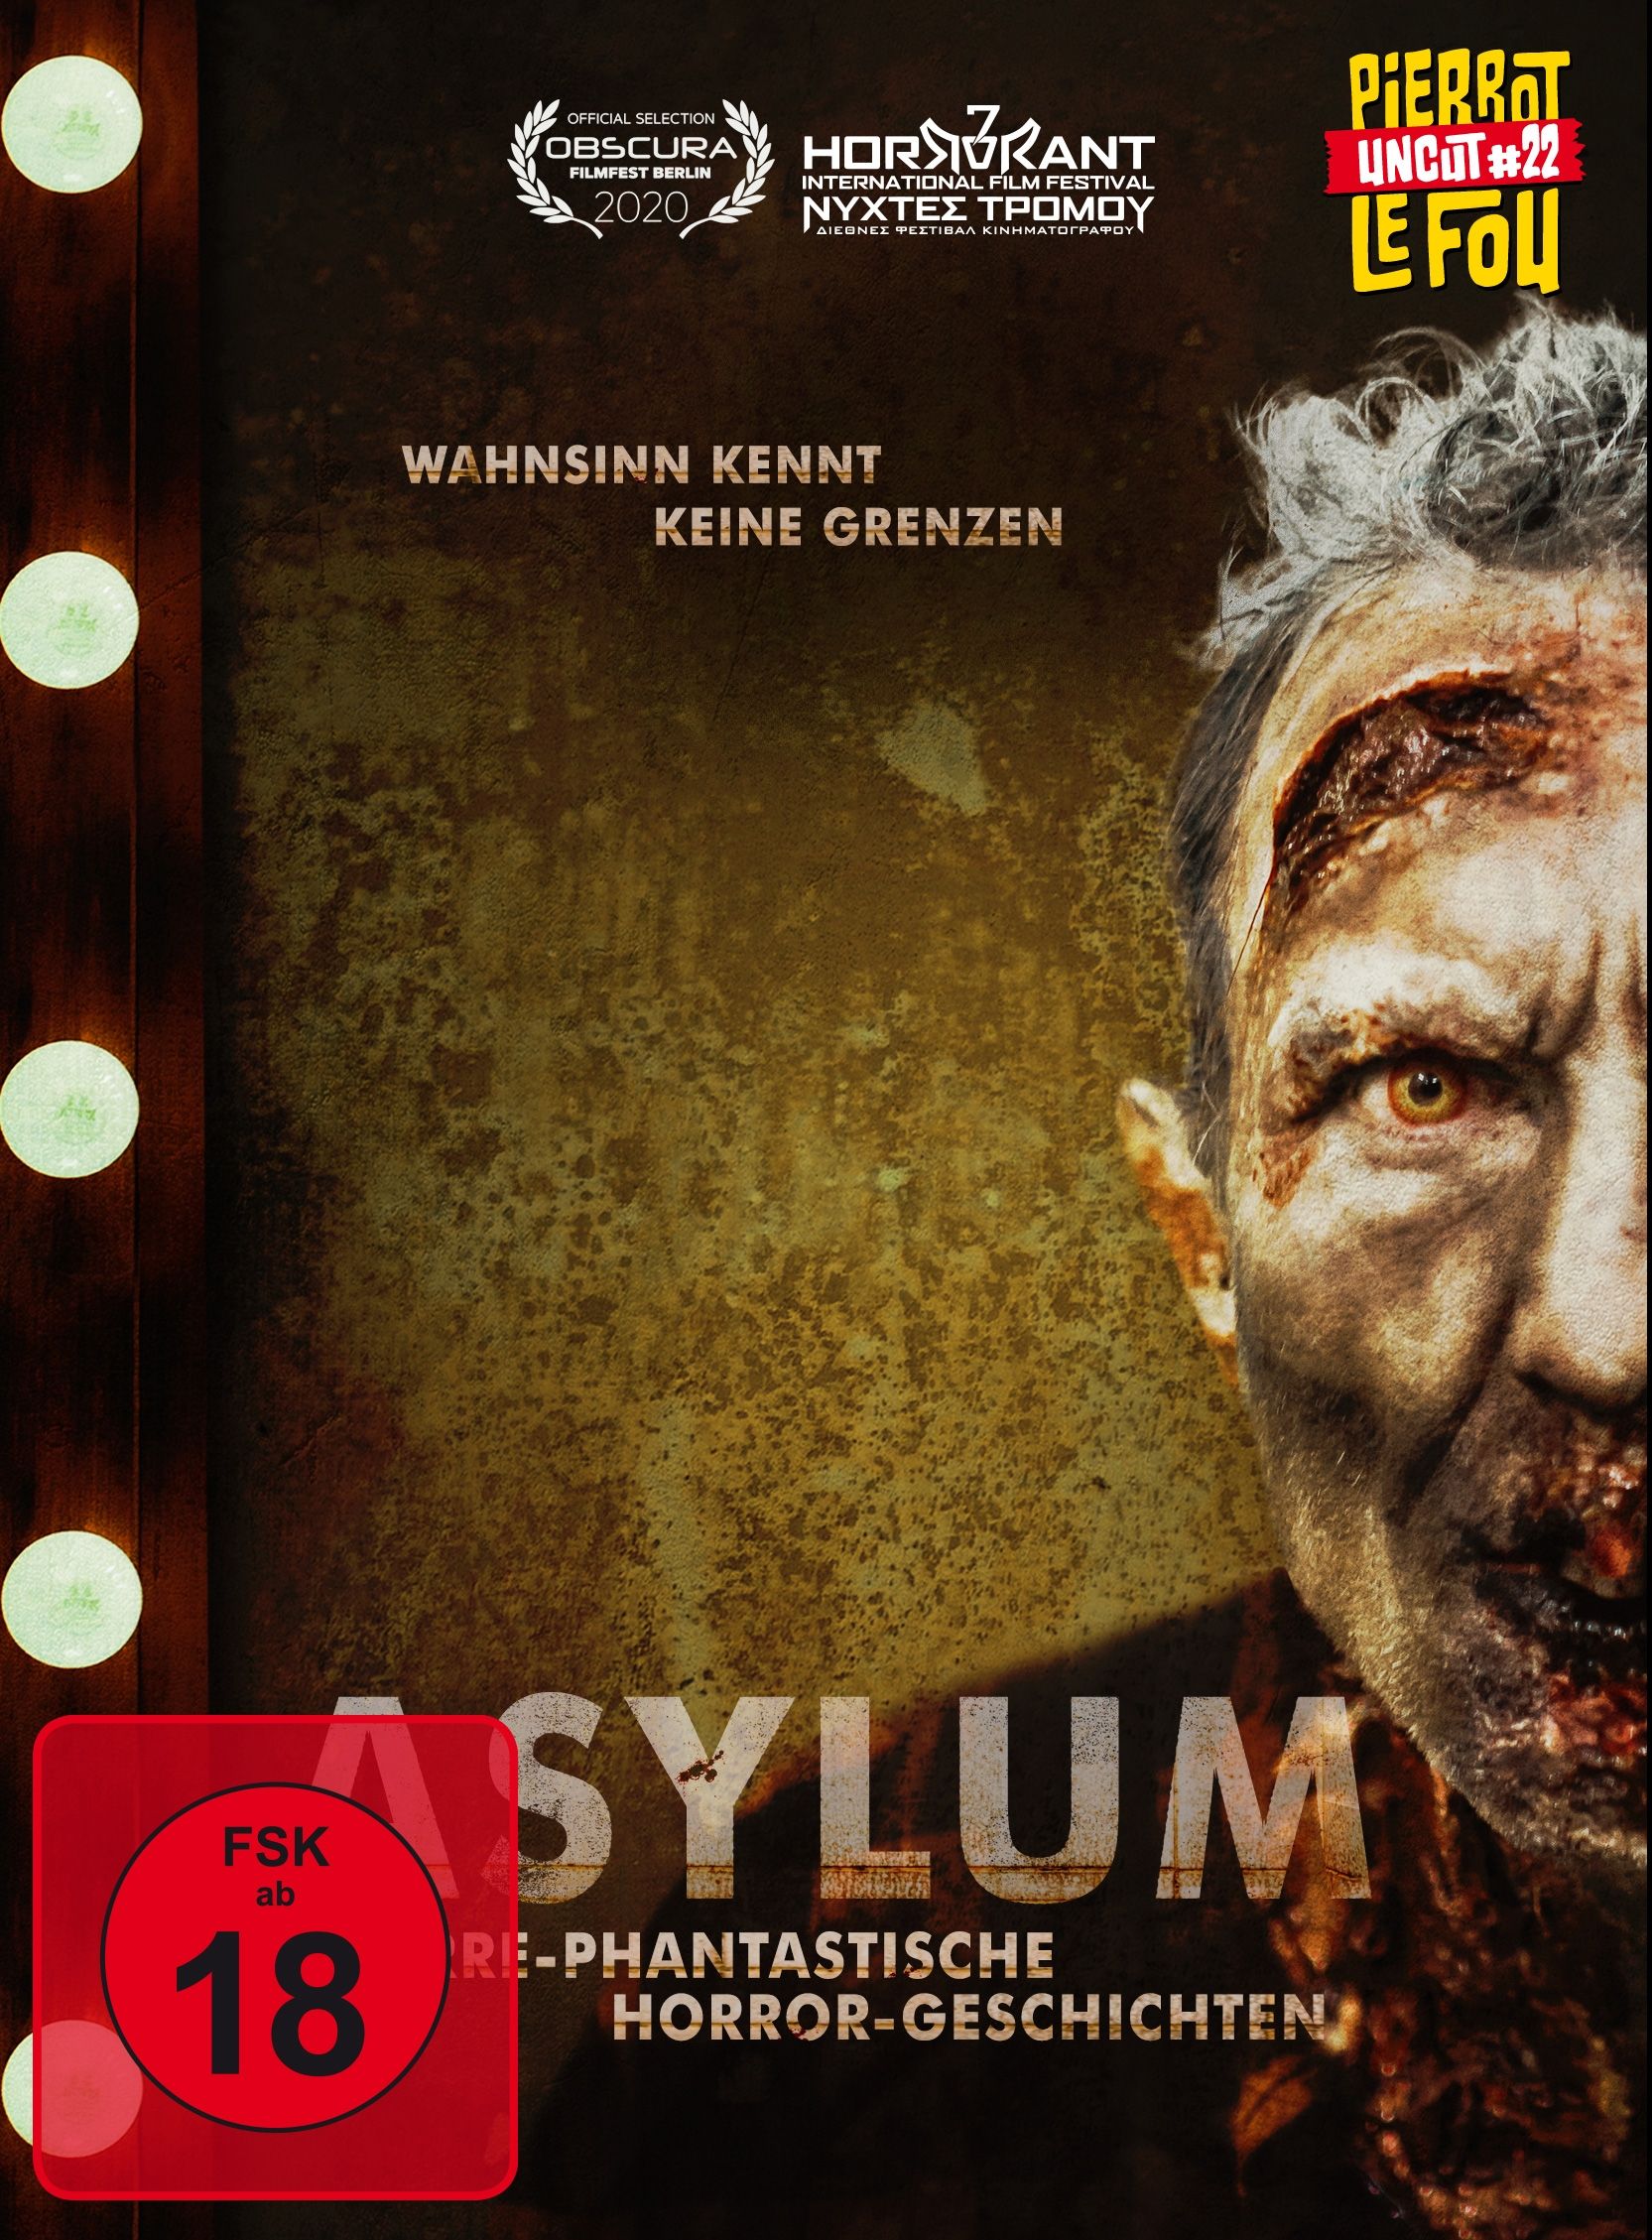 Asylum - Irre-phantastische Horror-Geschichten (Lim. Uncut Mediabook - Cover B) (DVD + BLURAY)